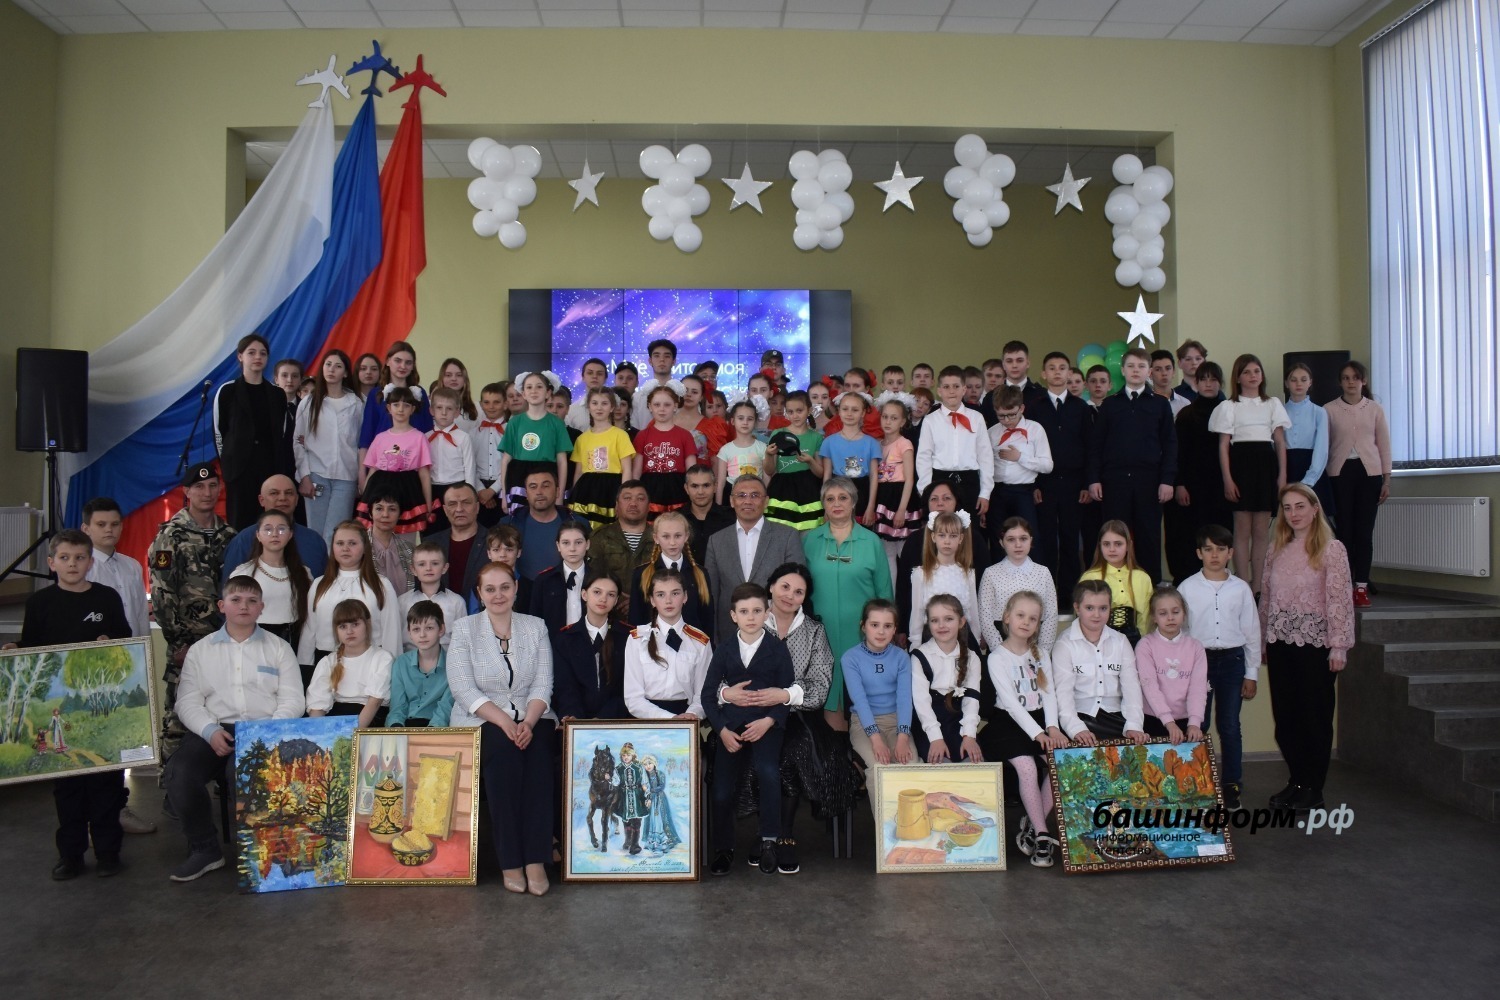 Картины от жителей Башкирии презентовали образовательному учреждению в Красном ключе